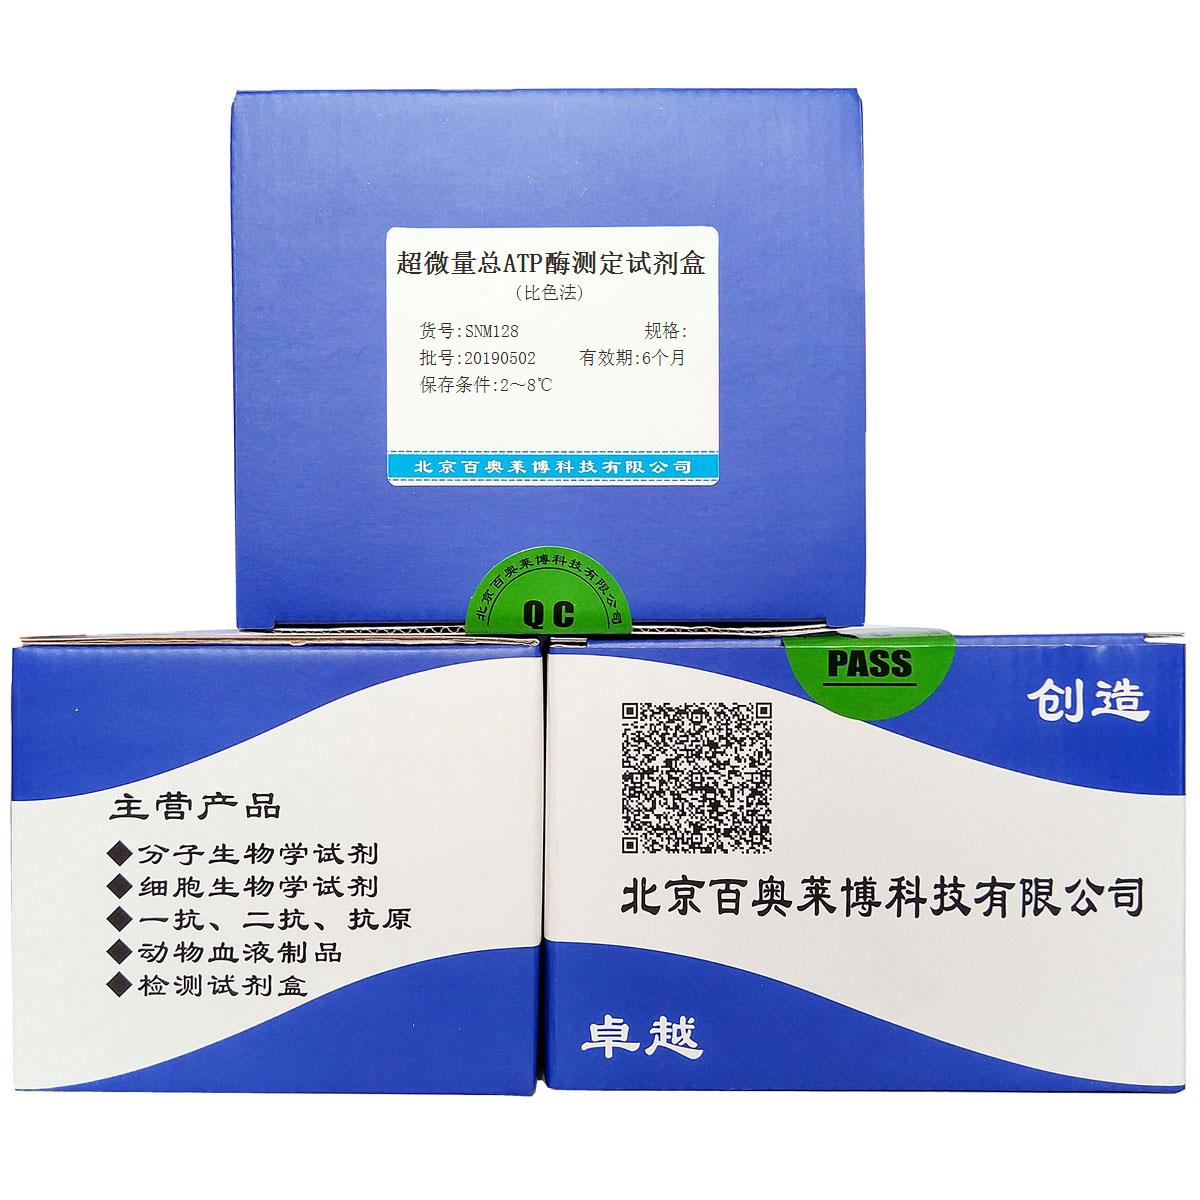 超微量总ATP酶测定试剂盒(比色法)北京价格